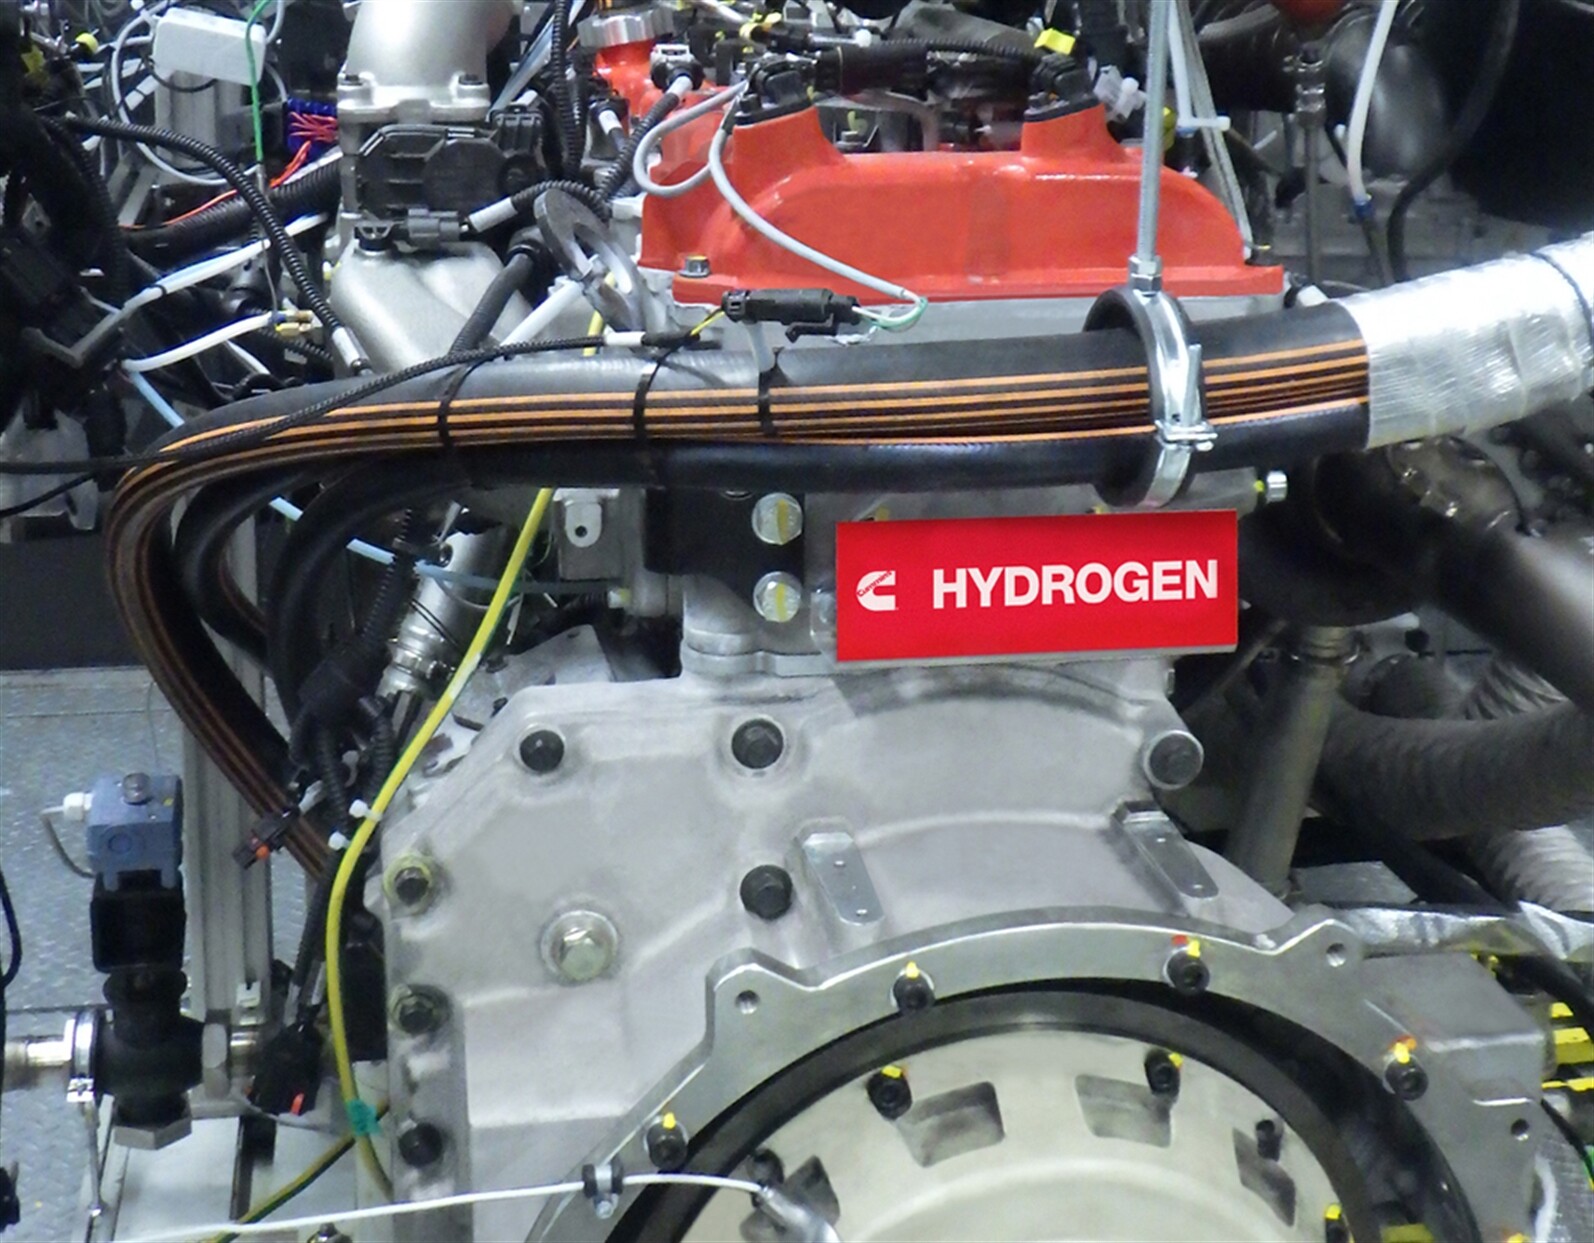 Cummins developing hydrogen-fuelled engines